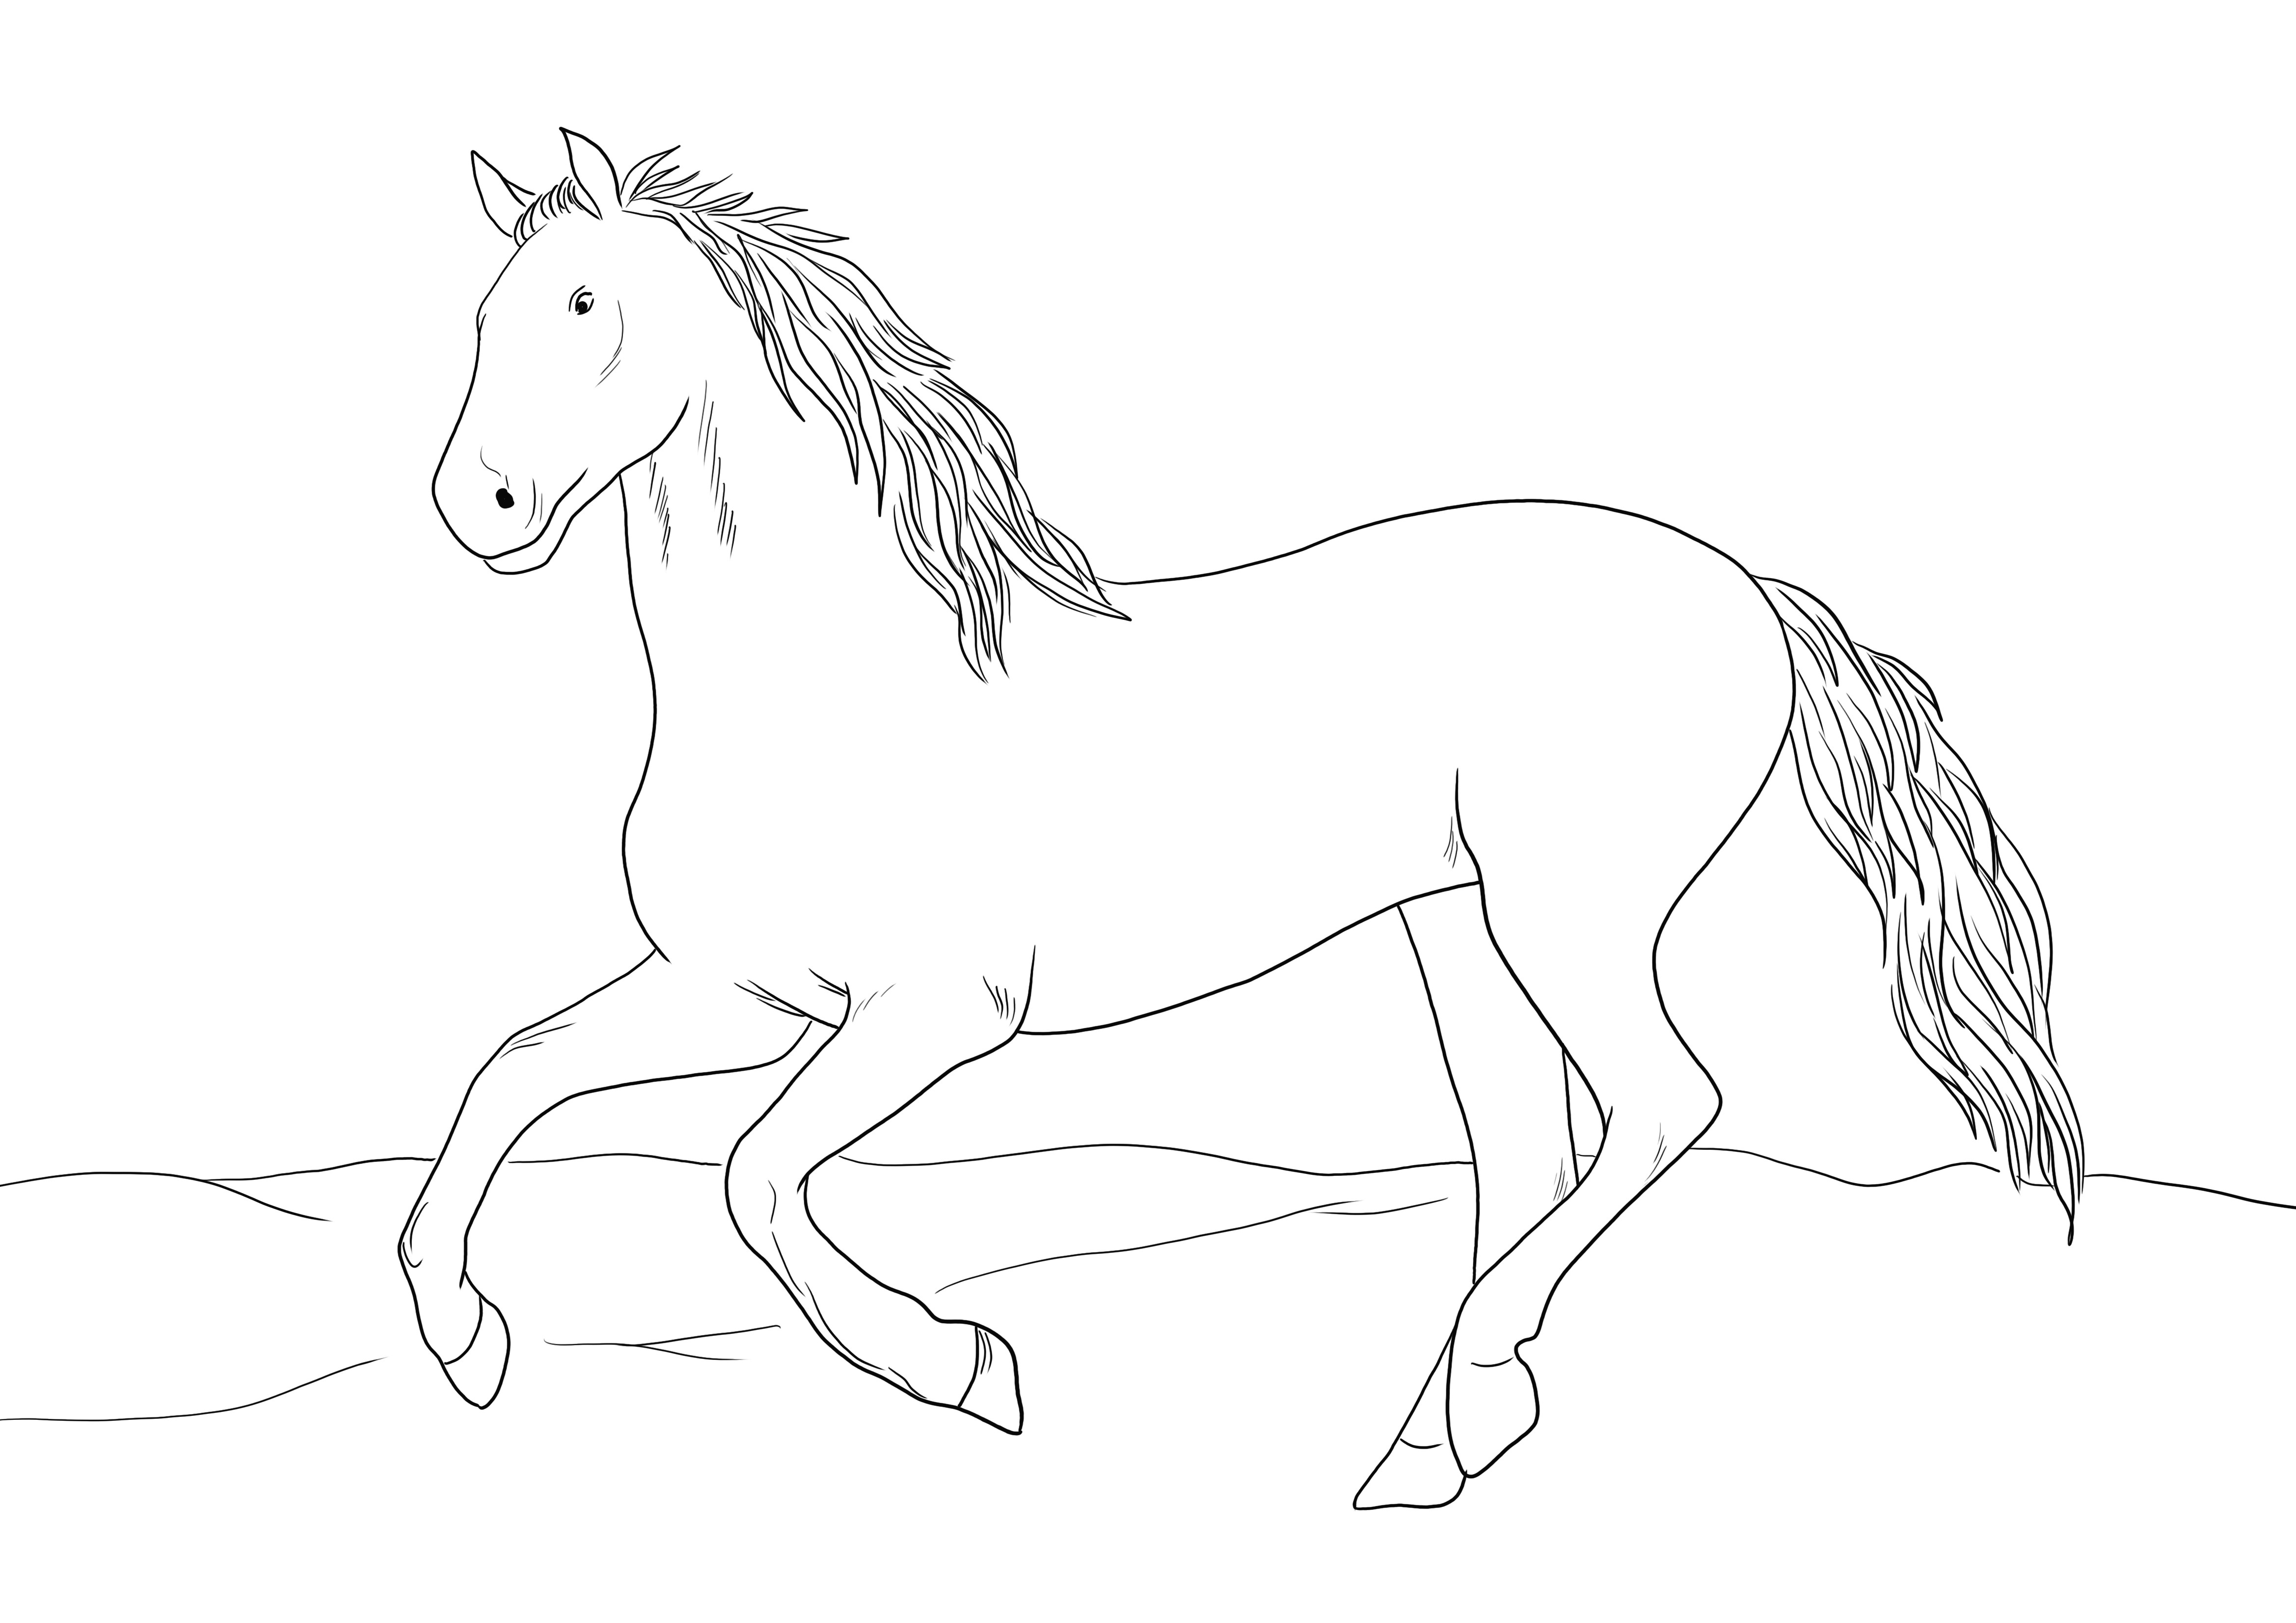 Dibujo de un gracioso caballo andaluz para colorear o imprimir gratis.